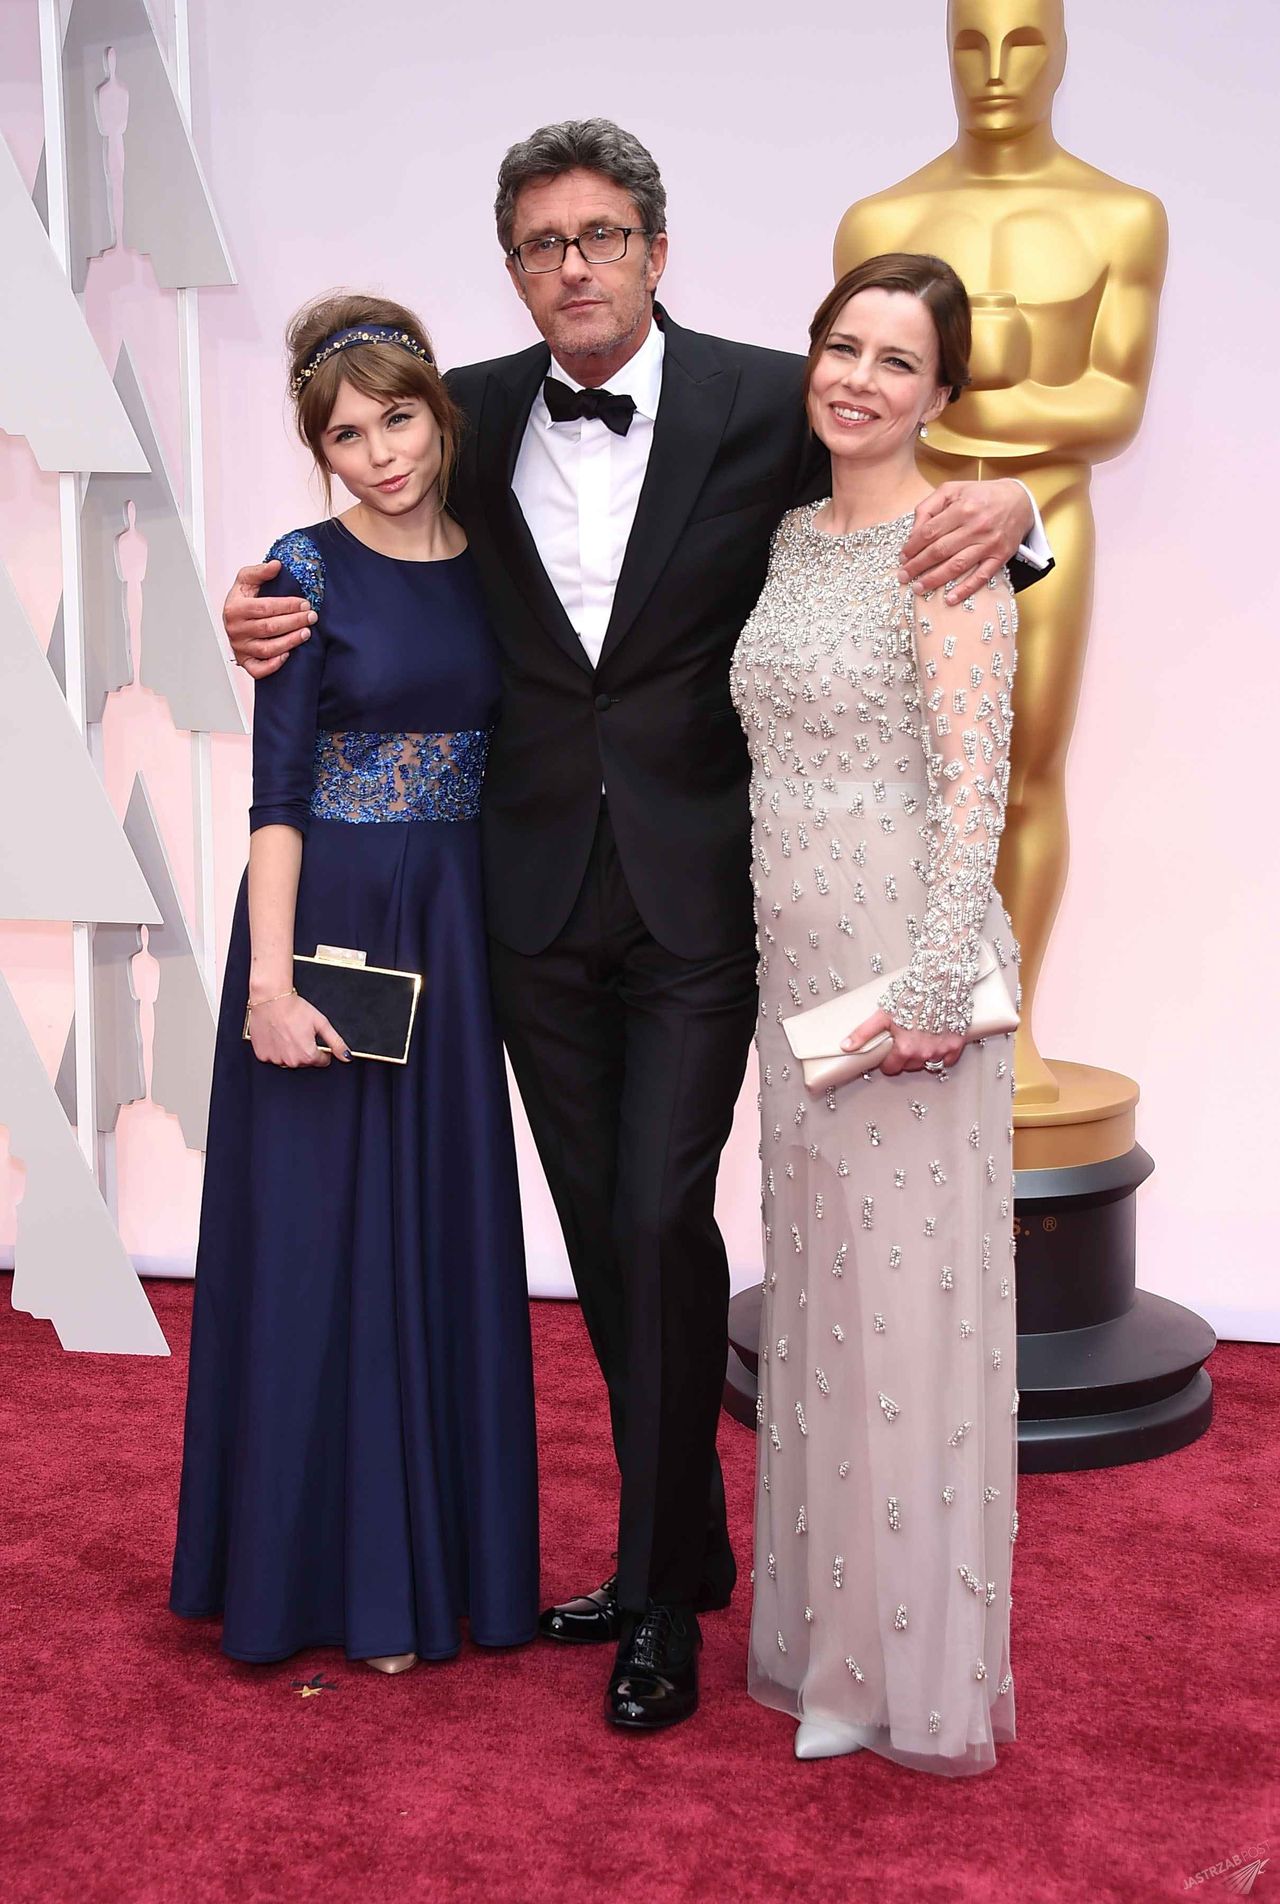 Agata Kulesza, Agata Trzebuchowska i Paweł Pawlikowski na ceremonii rozdania Oscarów, foto: ONS 87th Annual Academy Awards - Arrivals